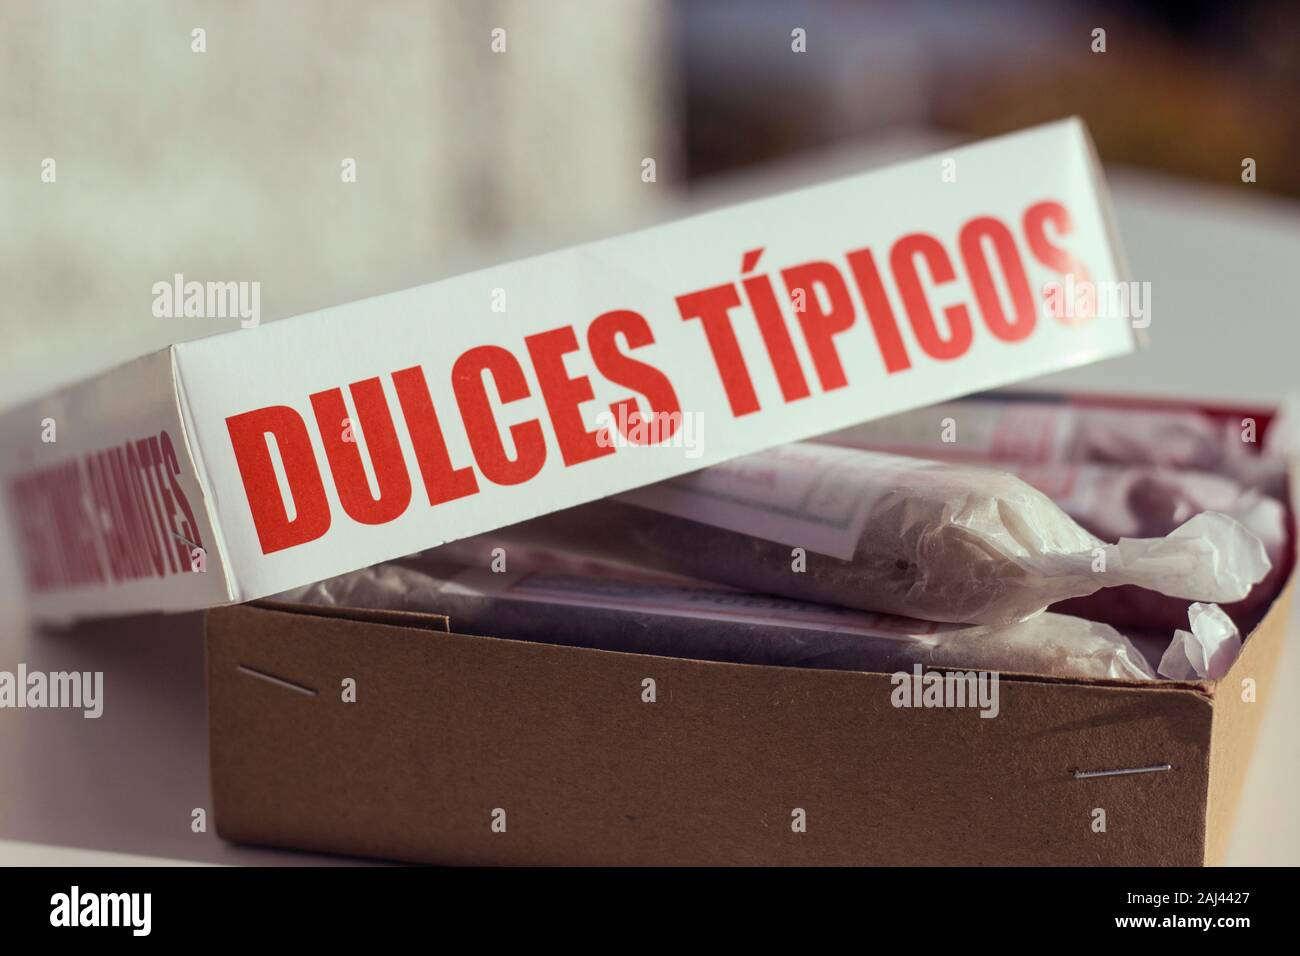 Mexikanische Dulces Tipicos. Frau hält eine Box mit Sortiment traditionelle Spezialitäten Stockfoto